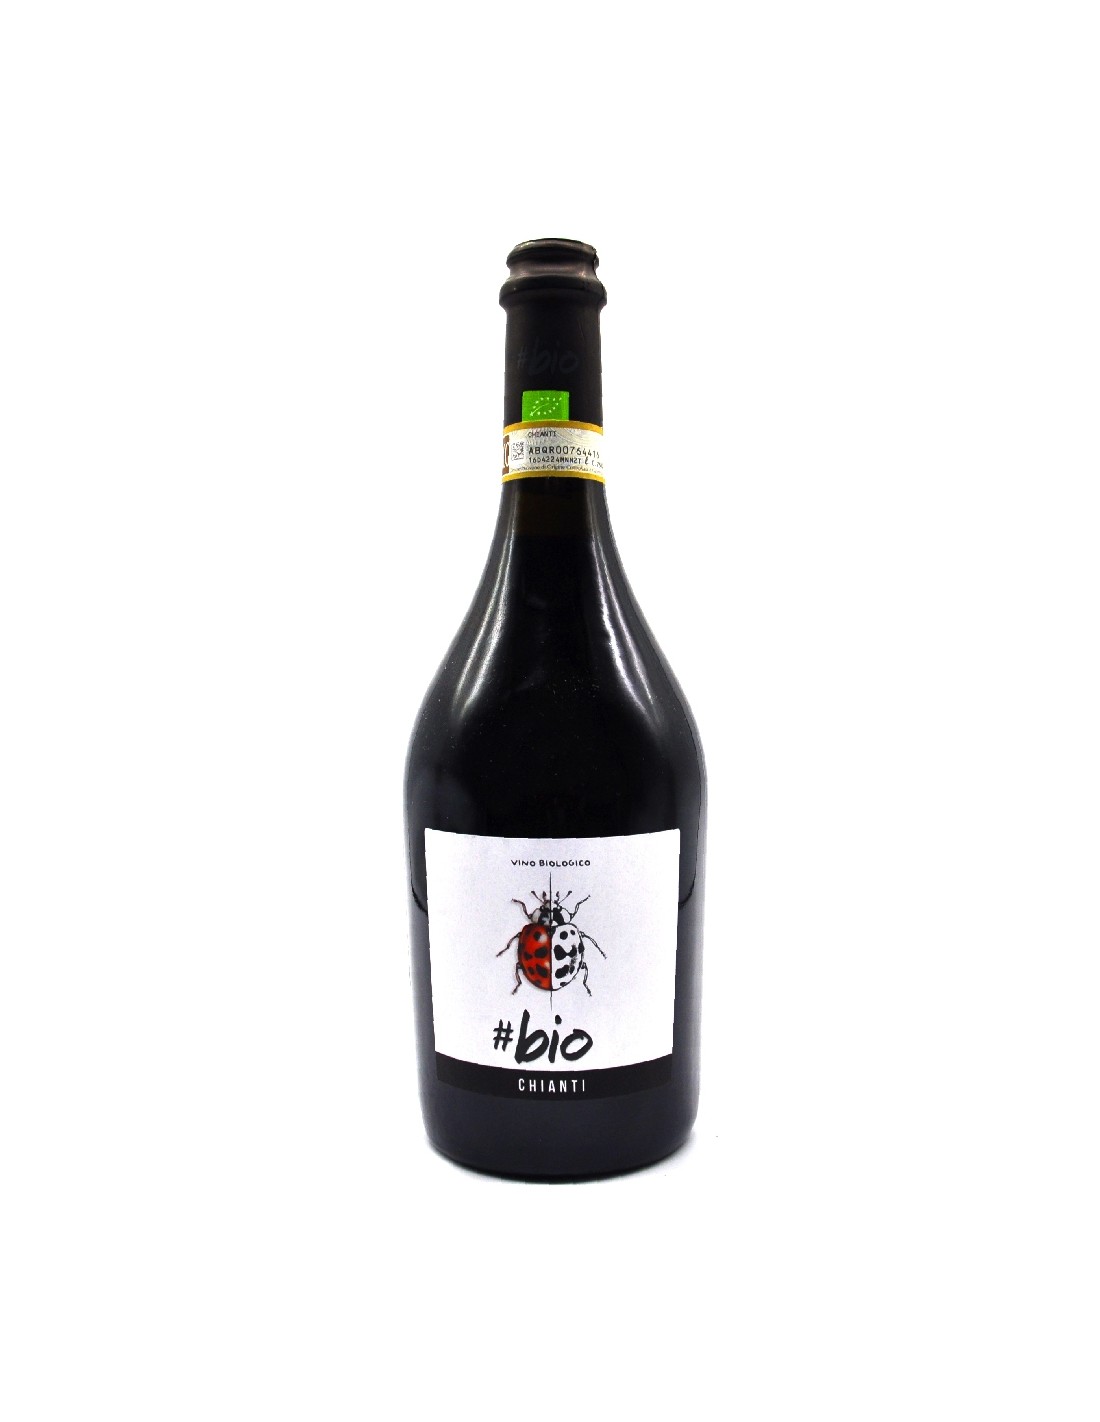 Vin rosu organic, Bio Chianti, 13% alc., 0.75L, Italia alcooldiscount.ro